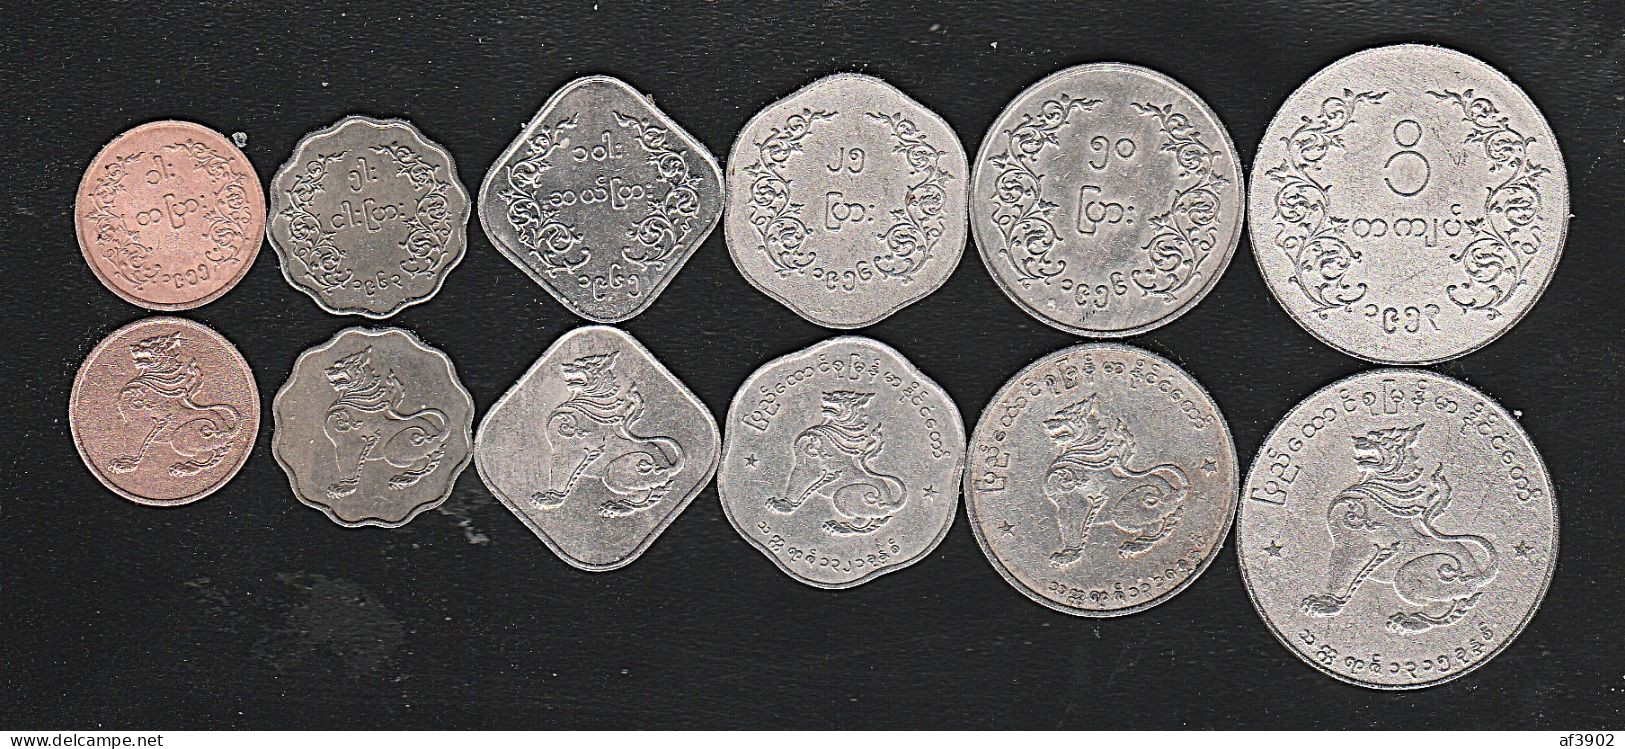 BURMA/MYANMAR COIN 1953-55 ISSUED 6 COINS COMPLETE SET, AUNC - Myanmar (Burma 1948-...)